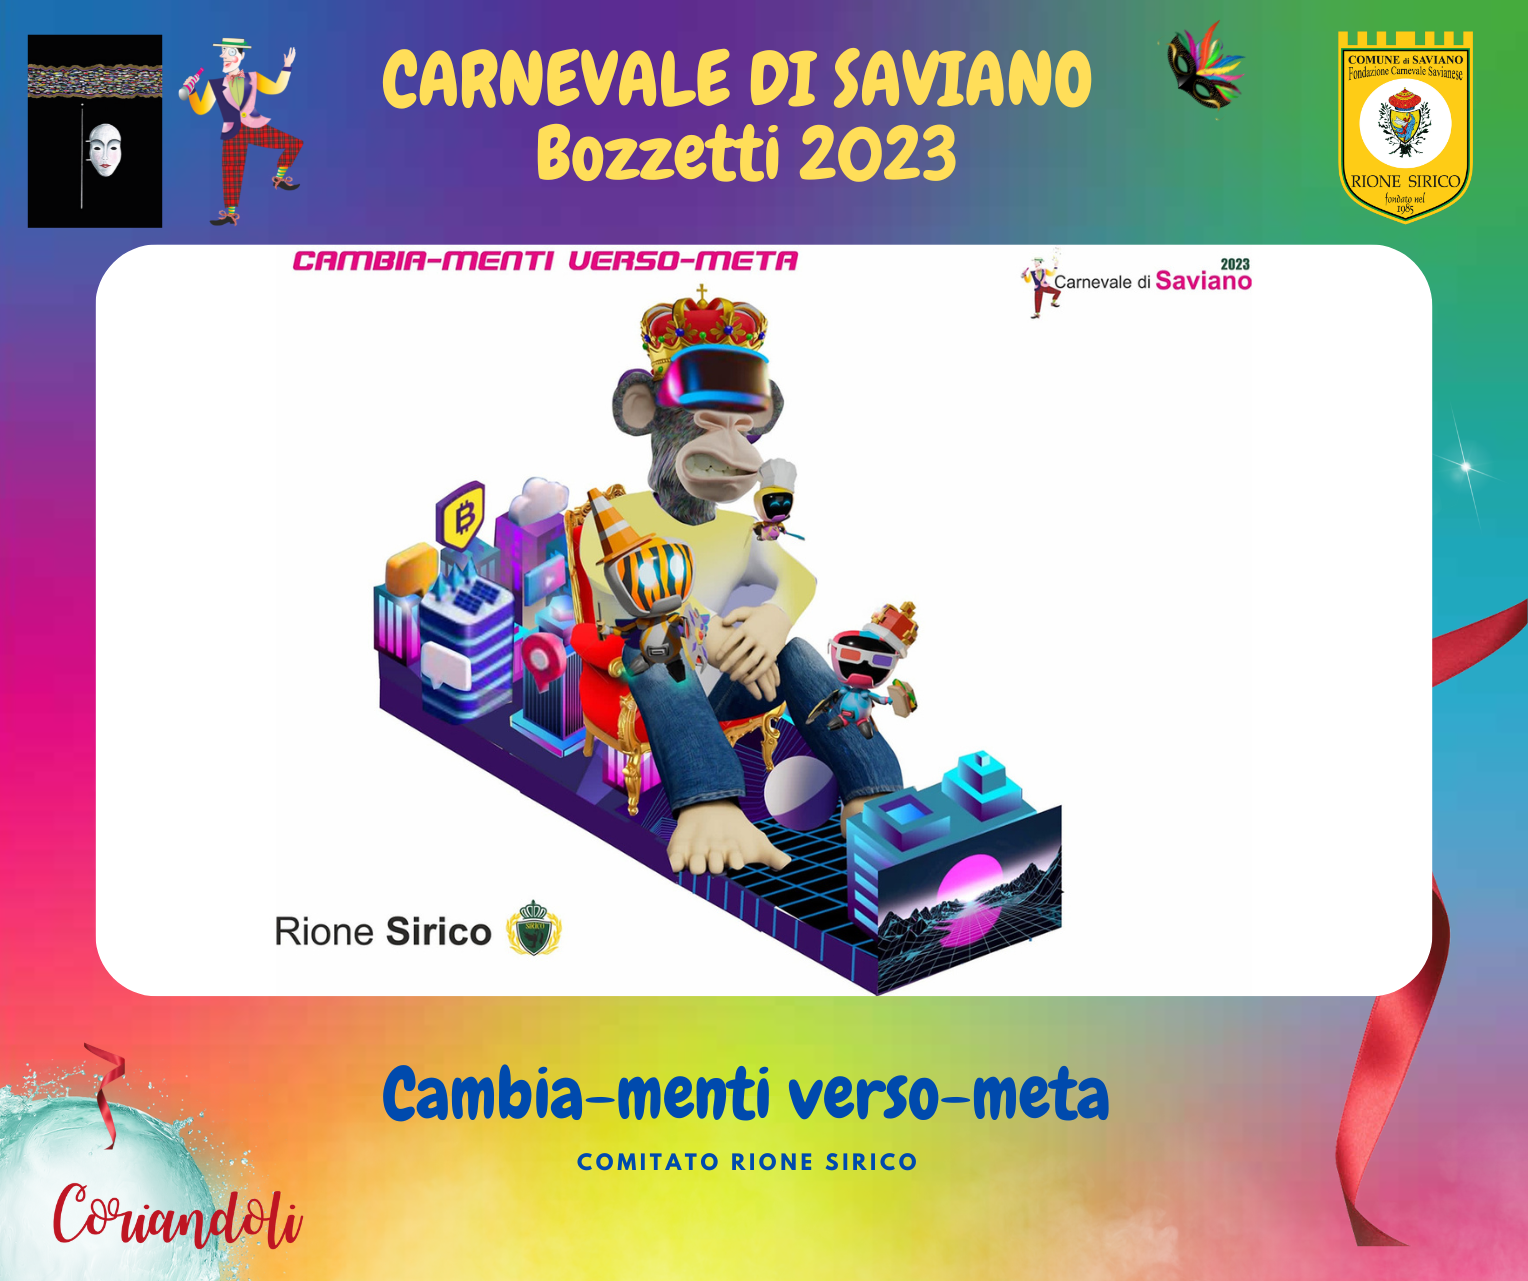 Carnevale di Saviano - Sito Ufficiale